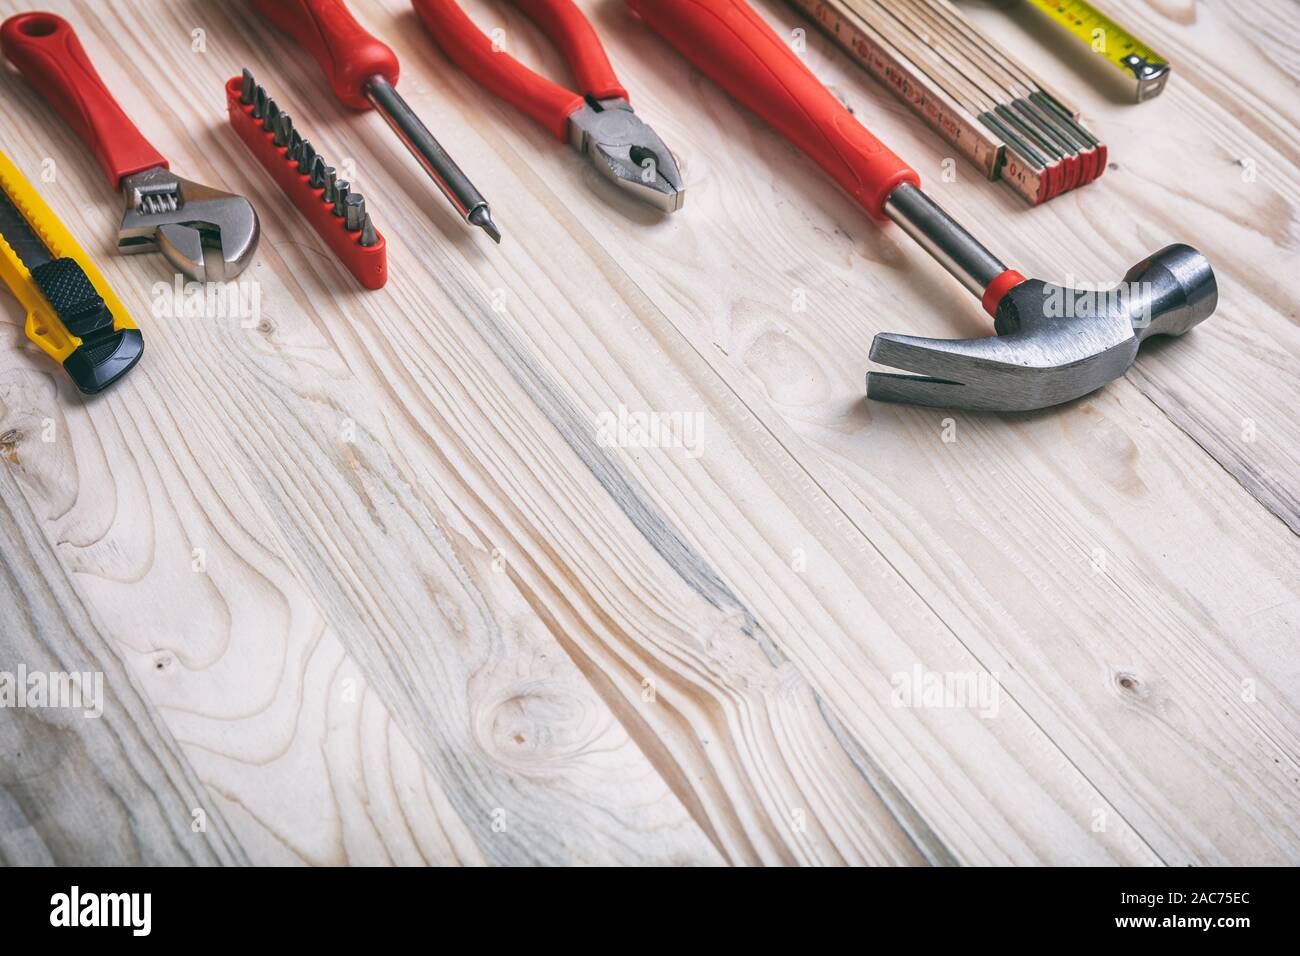 Ensemble d'outils à main de couleur rouge et jaune sur bois, copie espace, vue en gros plan. Bricolage, réparation, service concept. Banque D'Images